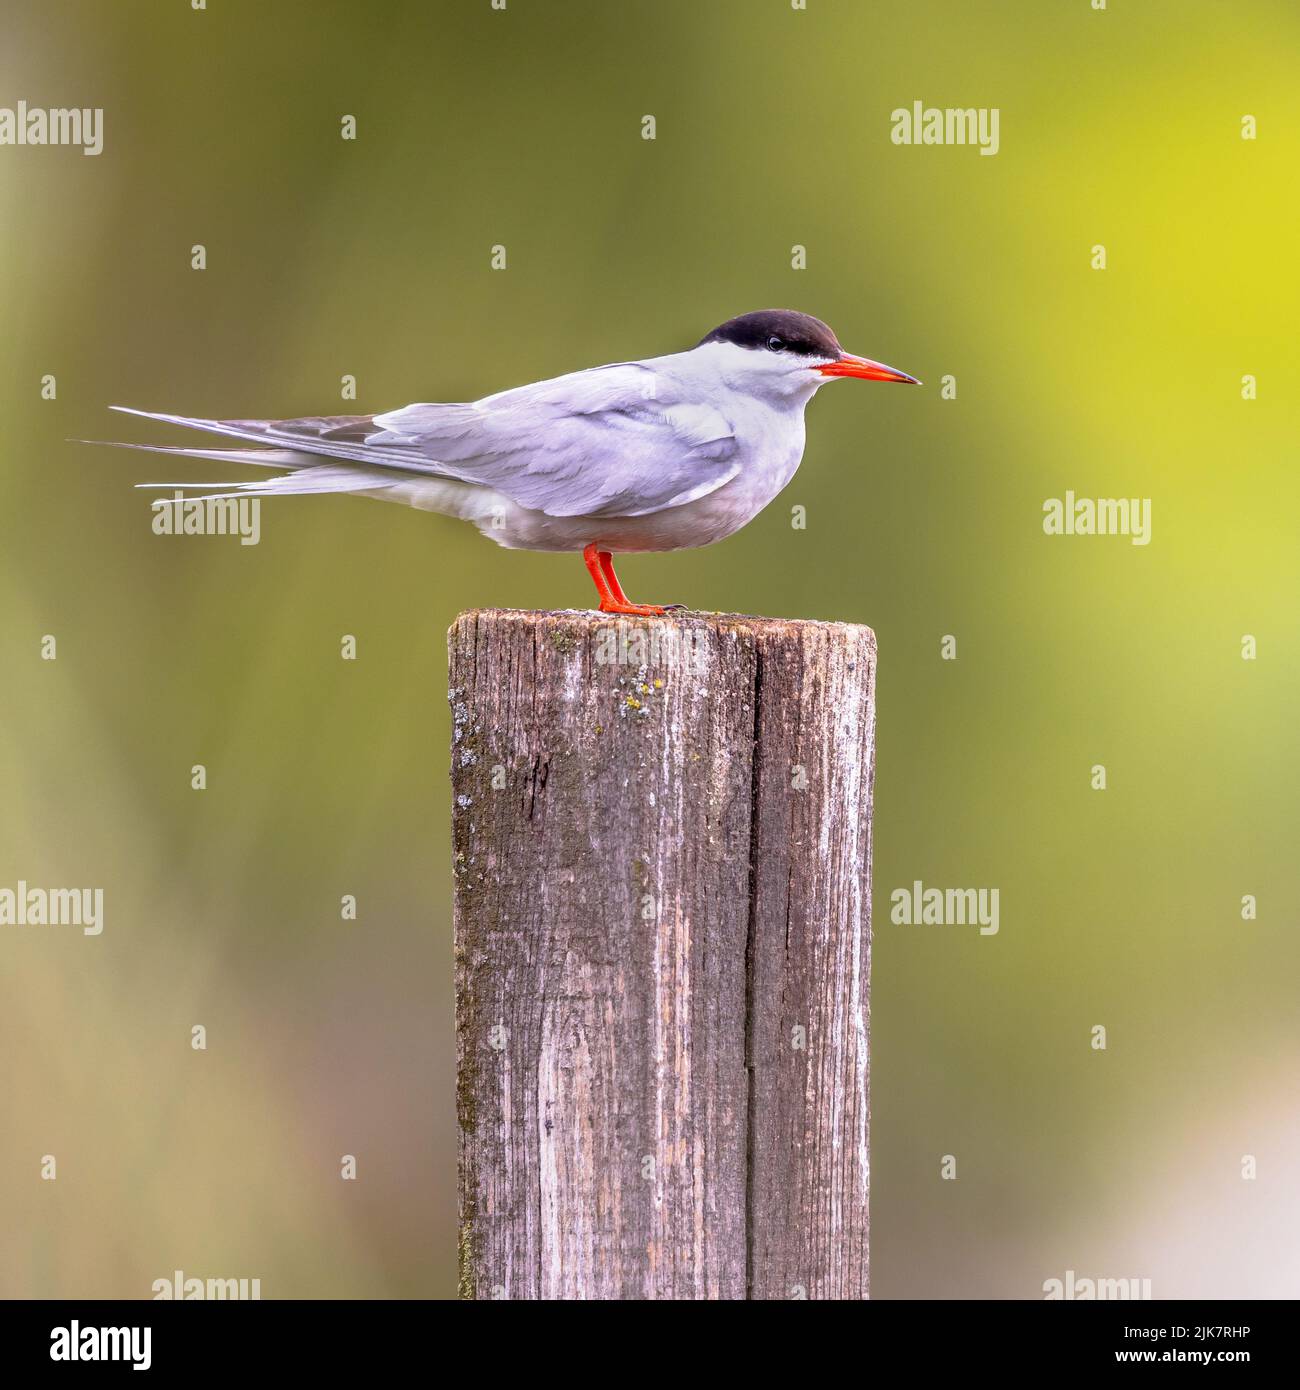 Tern común (Sterna hirundo) encaramado en el poste en condiciones de lluvia. Es una ave marina de la familia Laridae. Vida silvestre Escena de la Naturaleza en Europa. Foto de stock